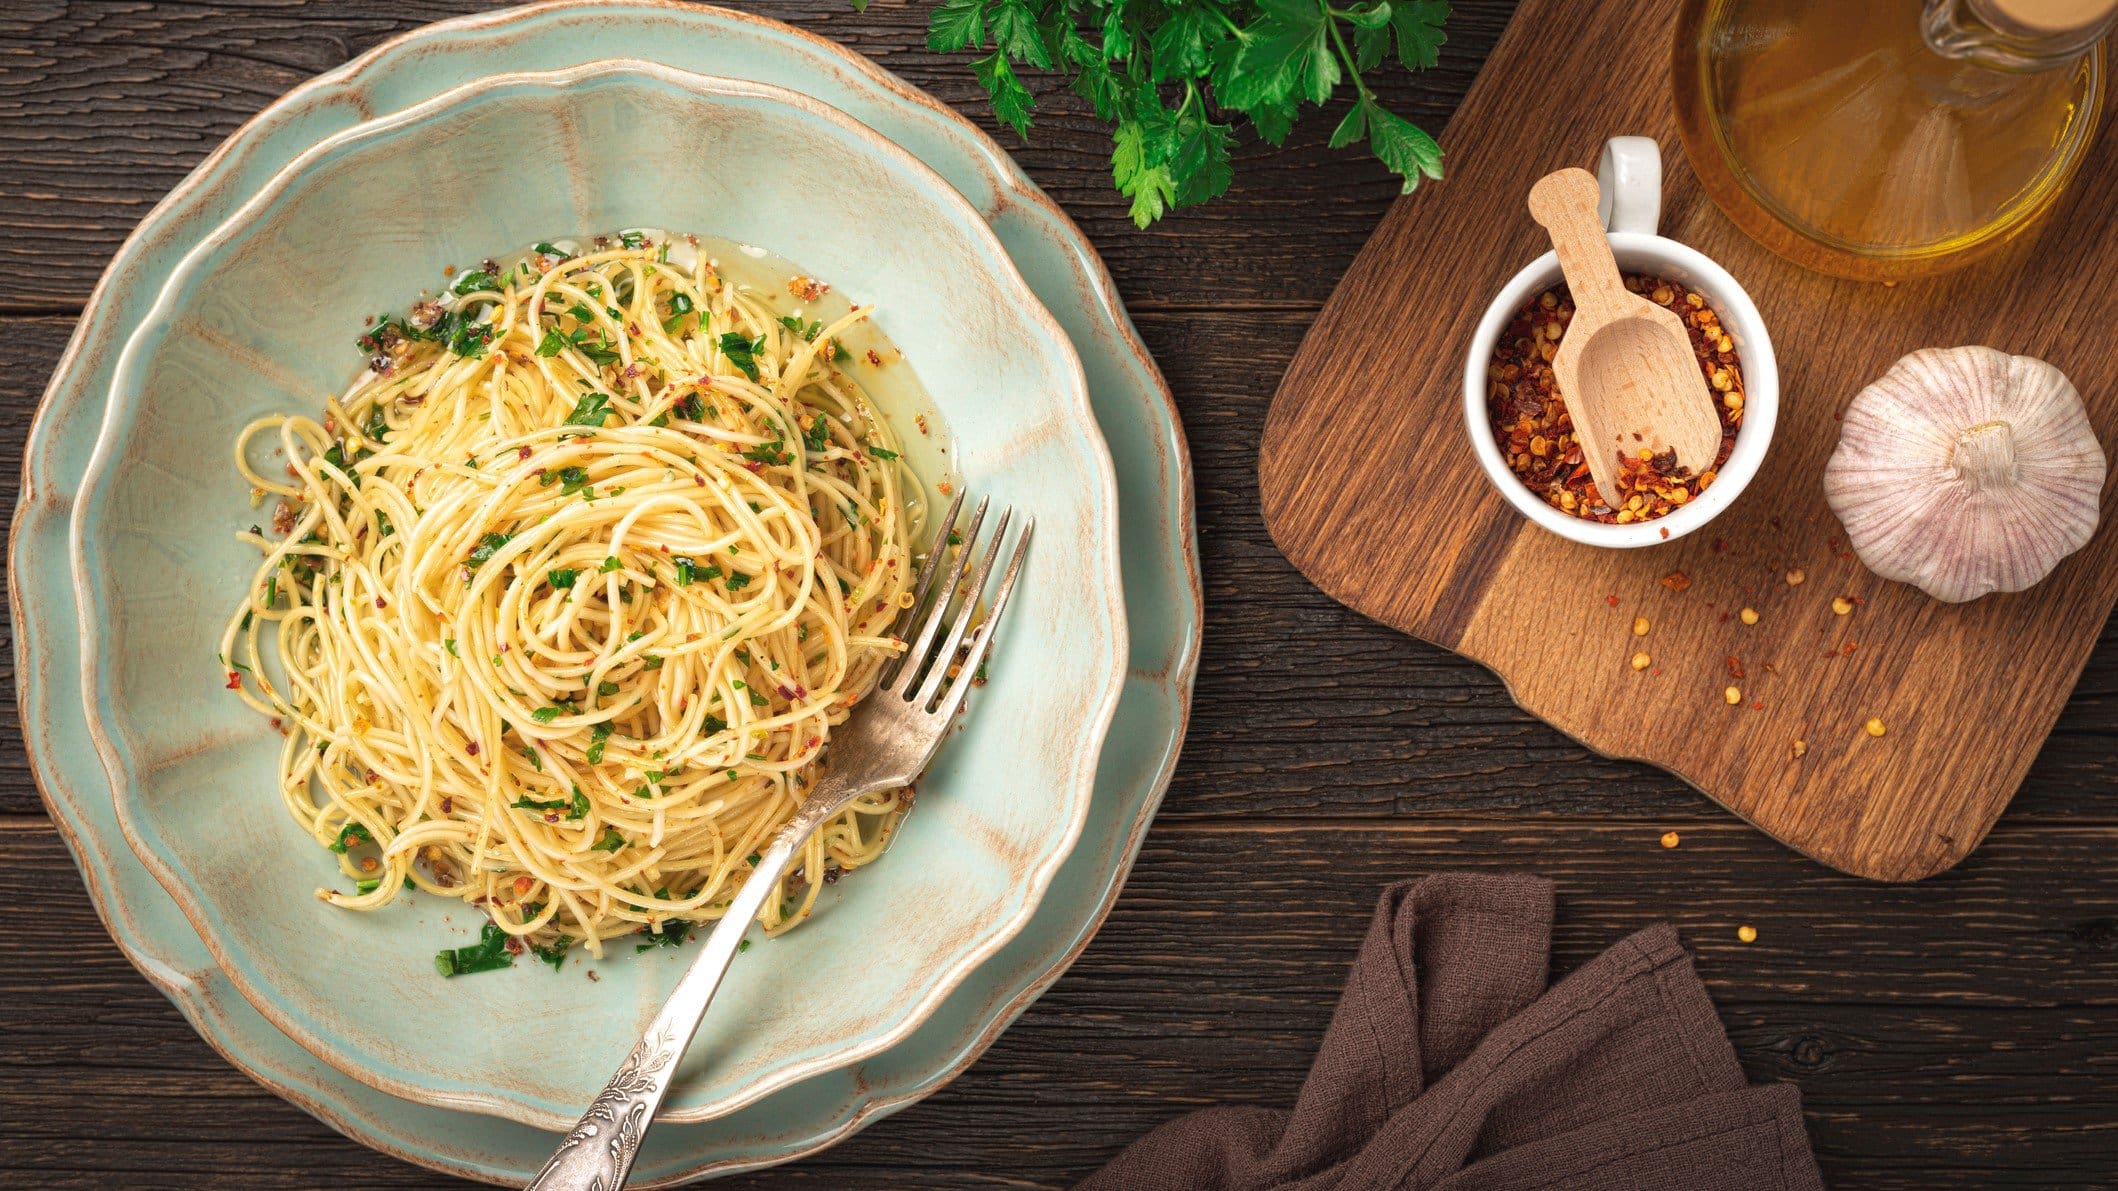 Spaghetti Aglio, Olio e Peperoncini auf rustikalem Teller. Das Ganze steht auf einem dunklen Holz und ist umgeben von den Hauptzutaten Chili, Knoblauch und Co